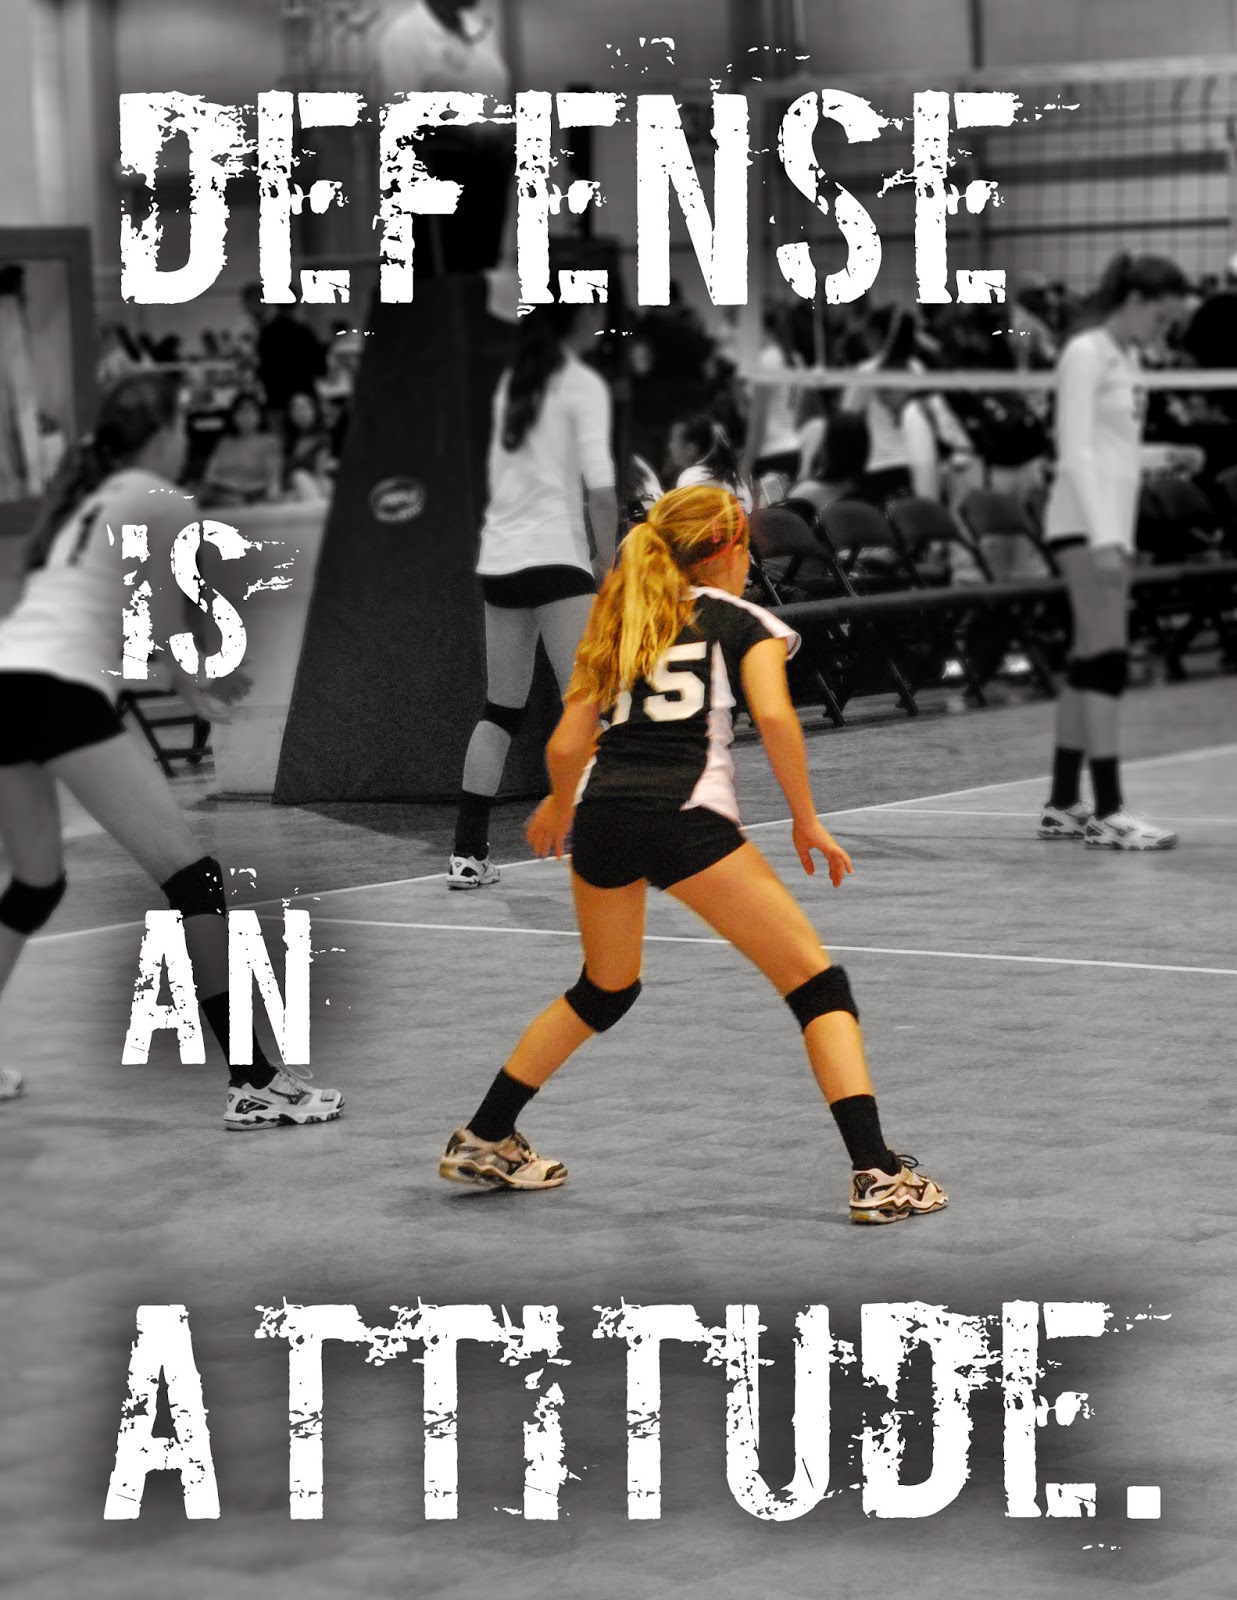 Defense is an attitude